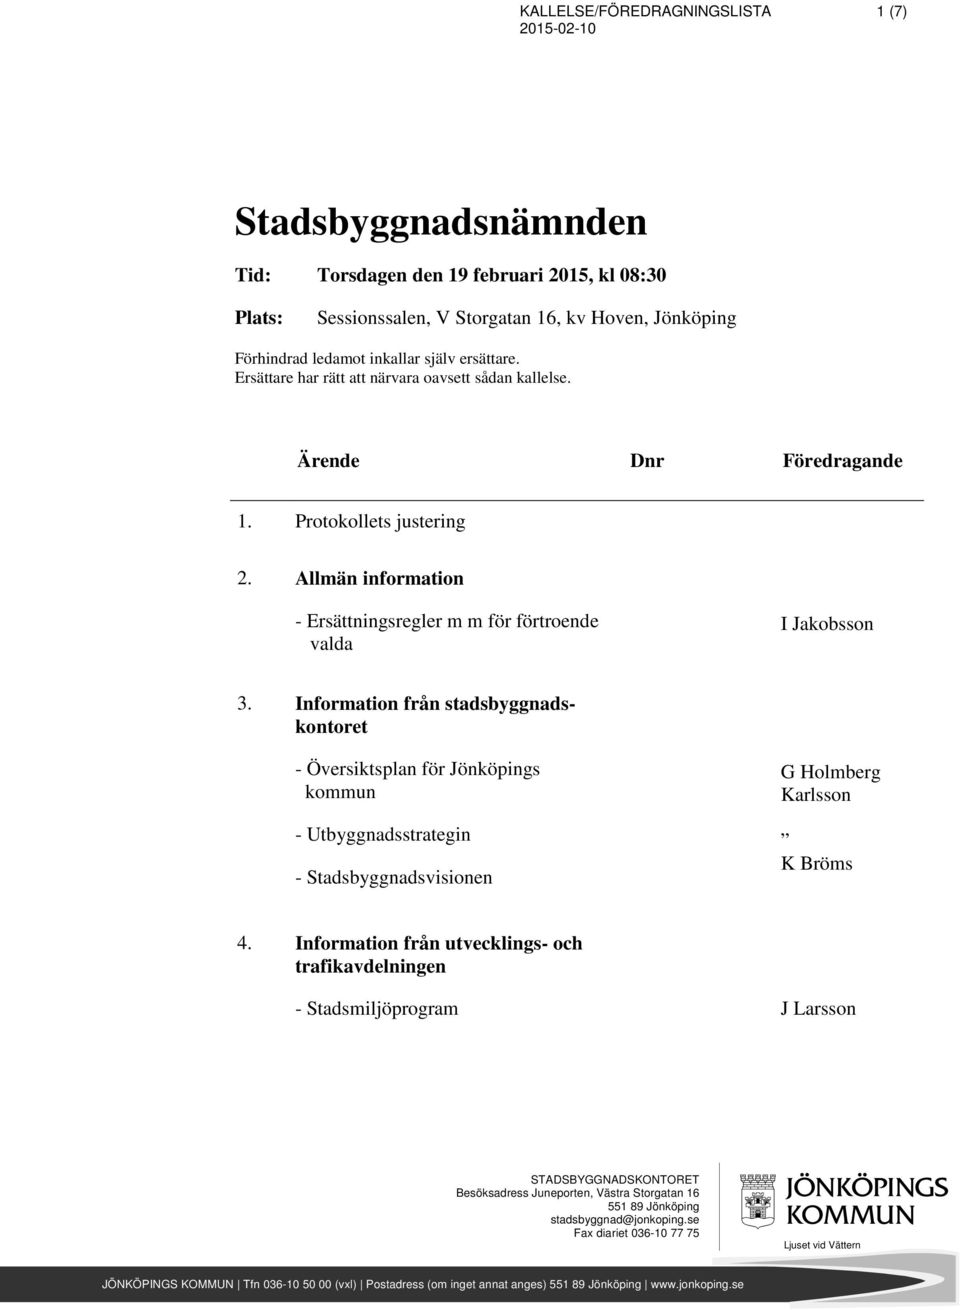 Information från stadsbyggnadskontoret - Översiktsplan för Jönköpings kommun - Utbyggnadsstrategin - Stadsbyggnadsvisionen G Holmberg Karlsson K Bröms 4.